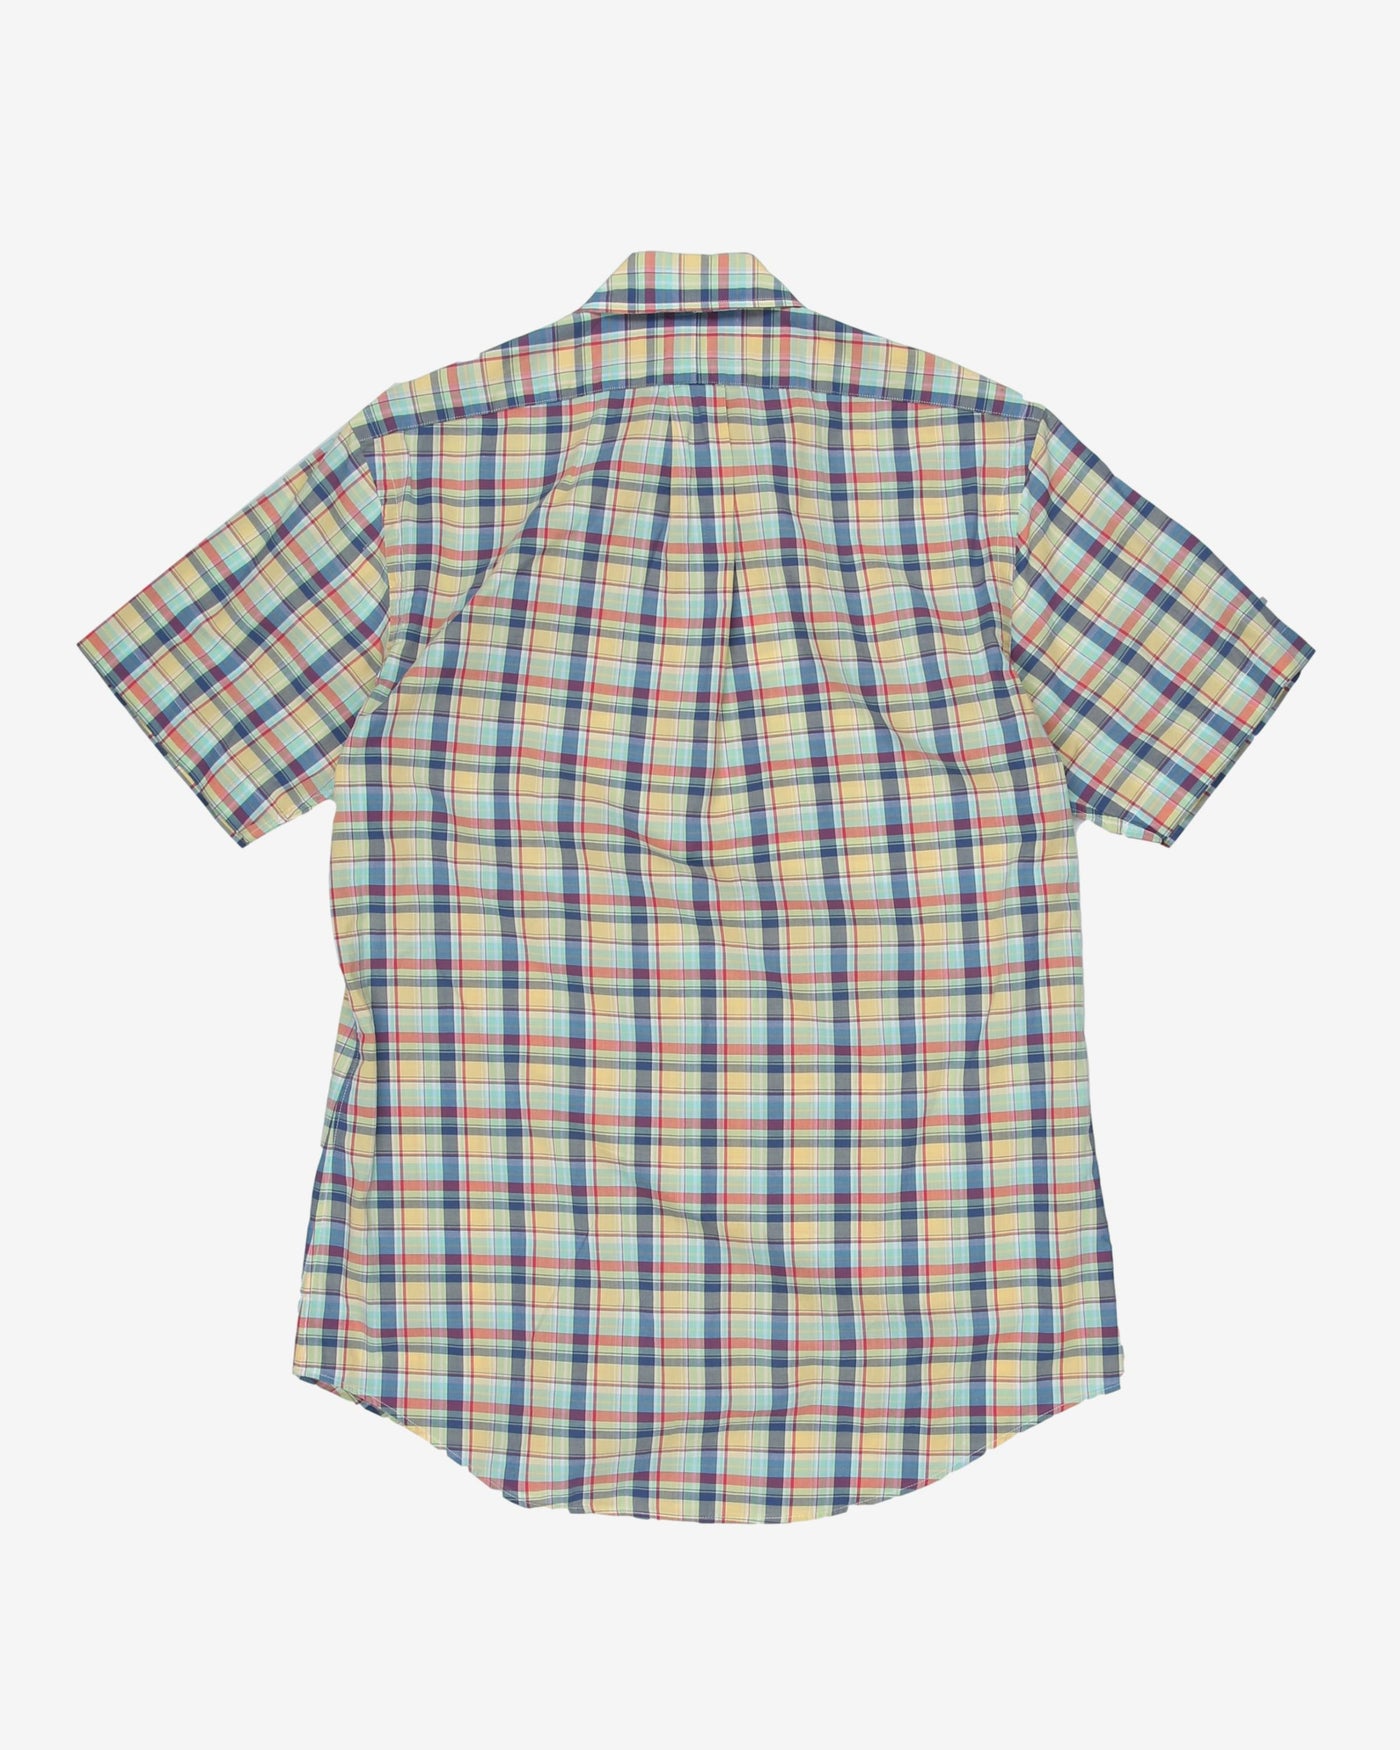 Ralph Lauren checked short sleeve shirt - S